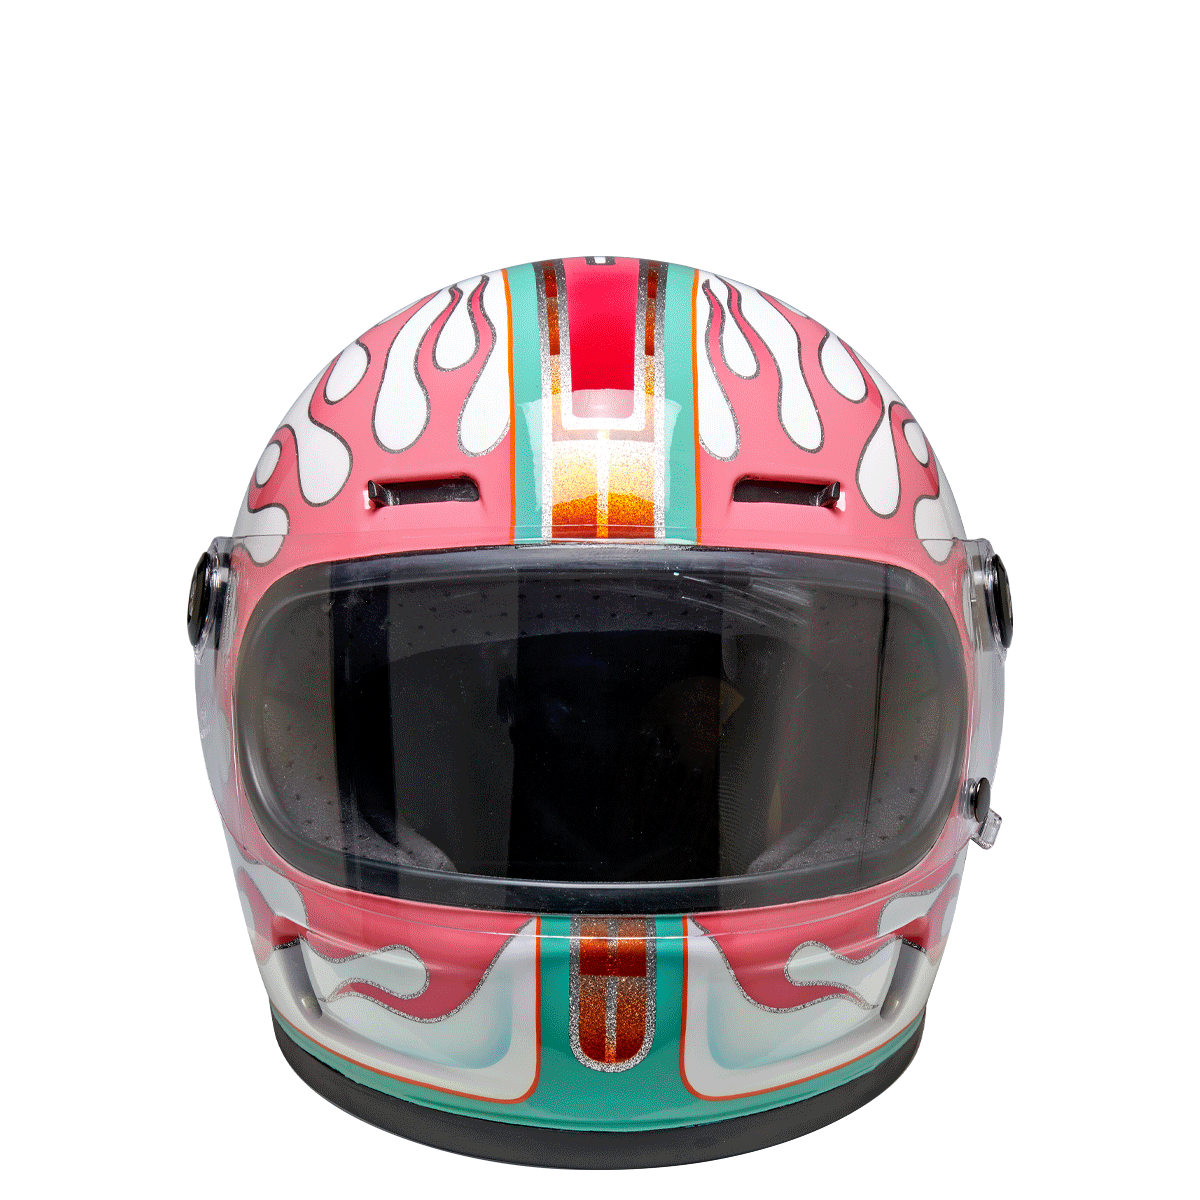 Custom Painted Gringo SV Helmet by Coco Durkin